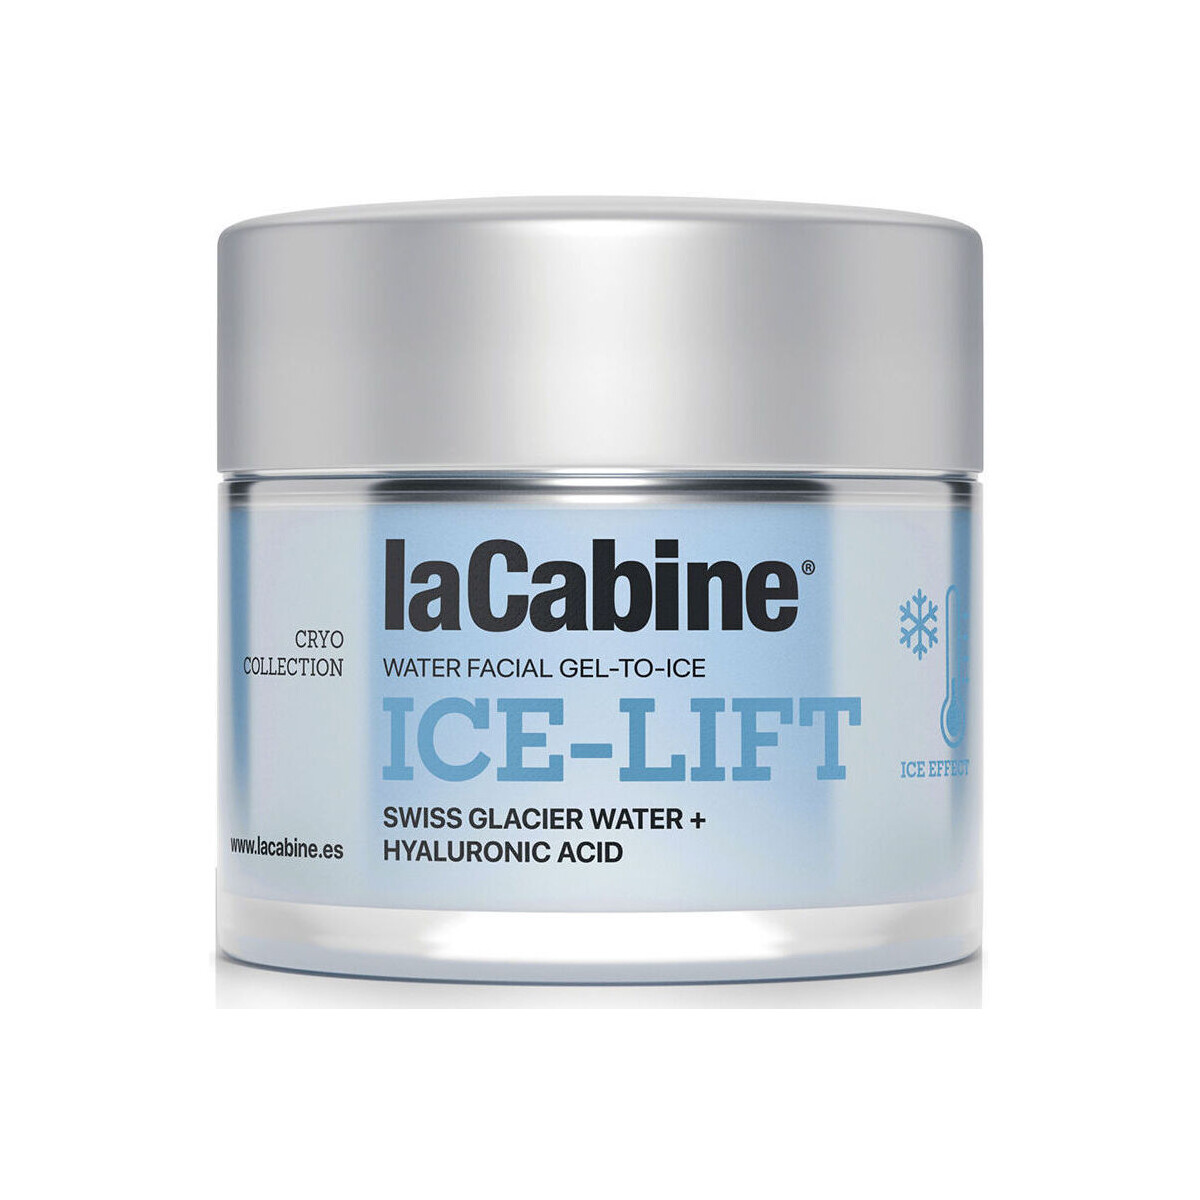 Beauty Anti-Aging & Anti-Falten Produkte La Cabine Ice-lift Gesichtsgel 